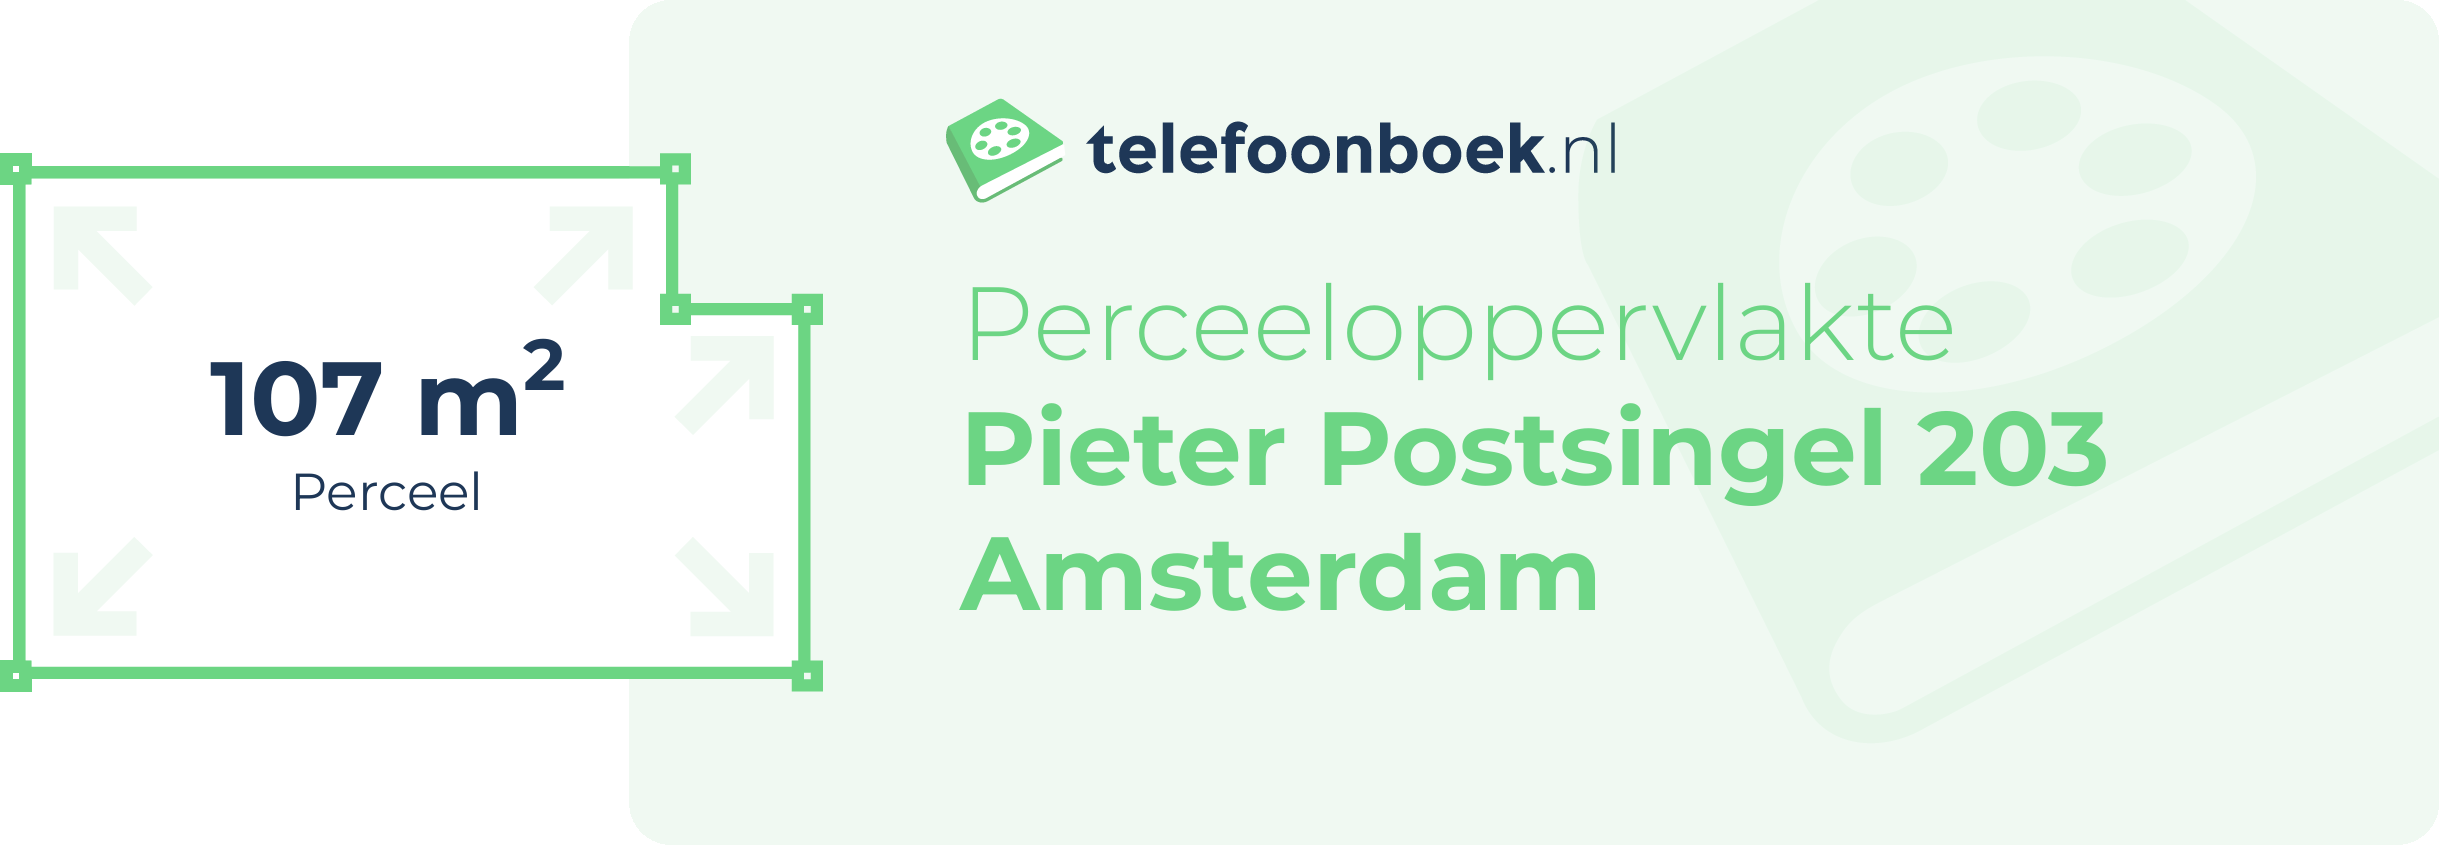 Perceeloppervlakte Pieter Postsingel 203 Amsterdam